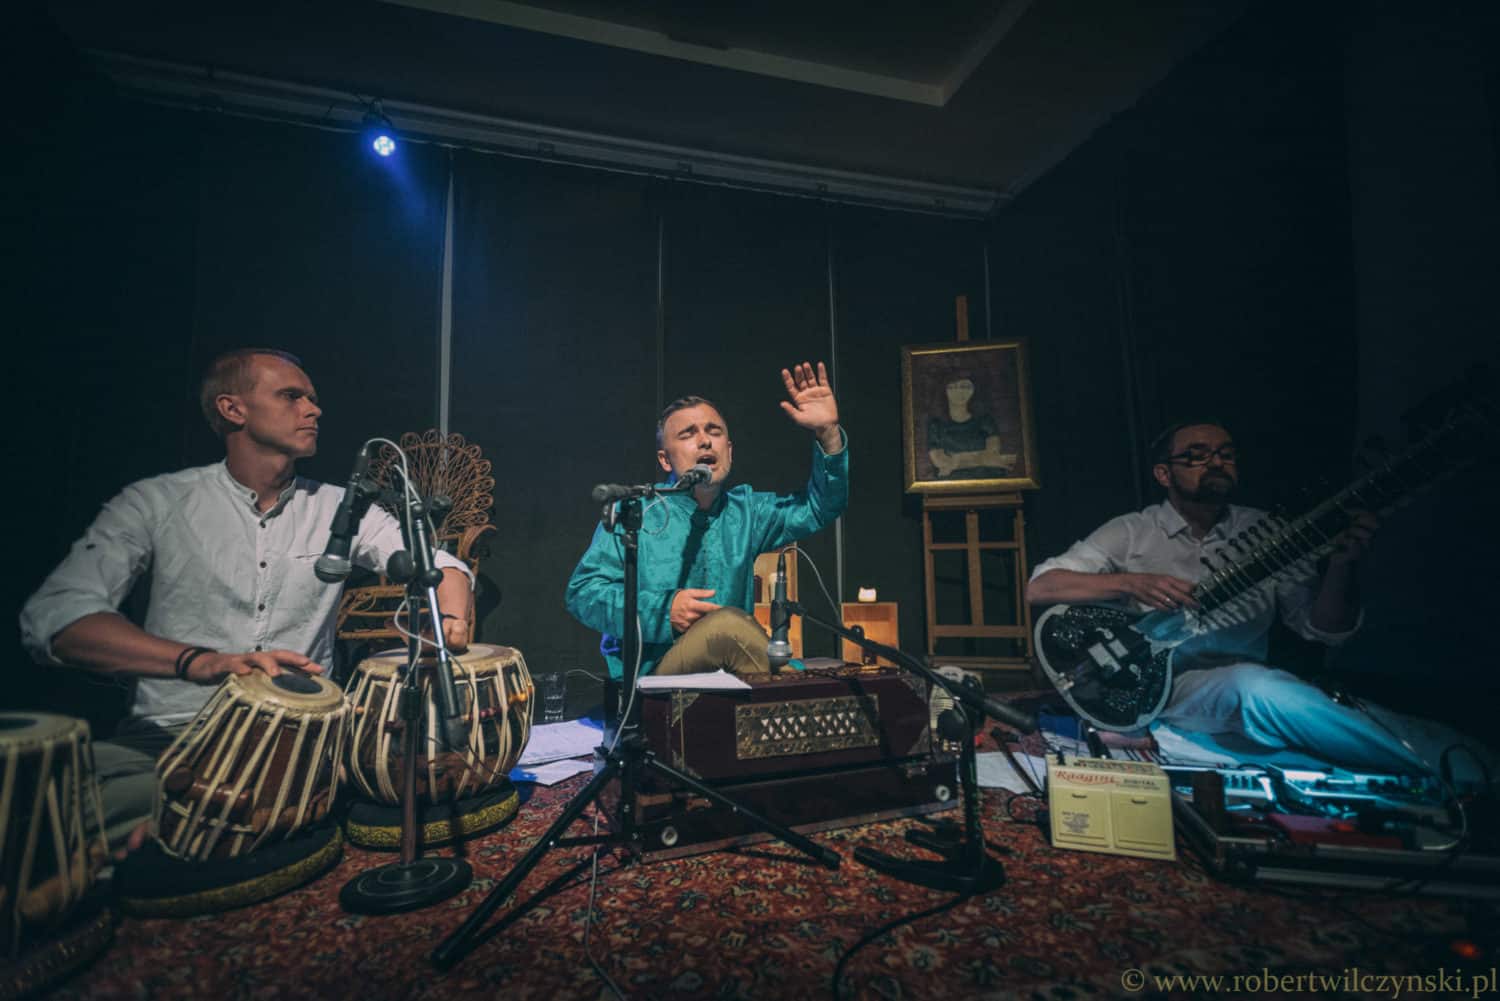 Muzyka indyjska – podróż przez różnobarwne kultury, języki i dźwięki subkontynentu indyjskiego ~ Michał Rudaś